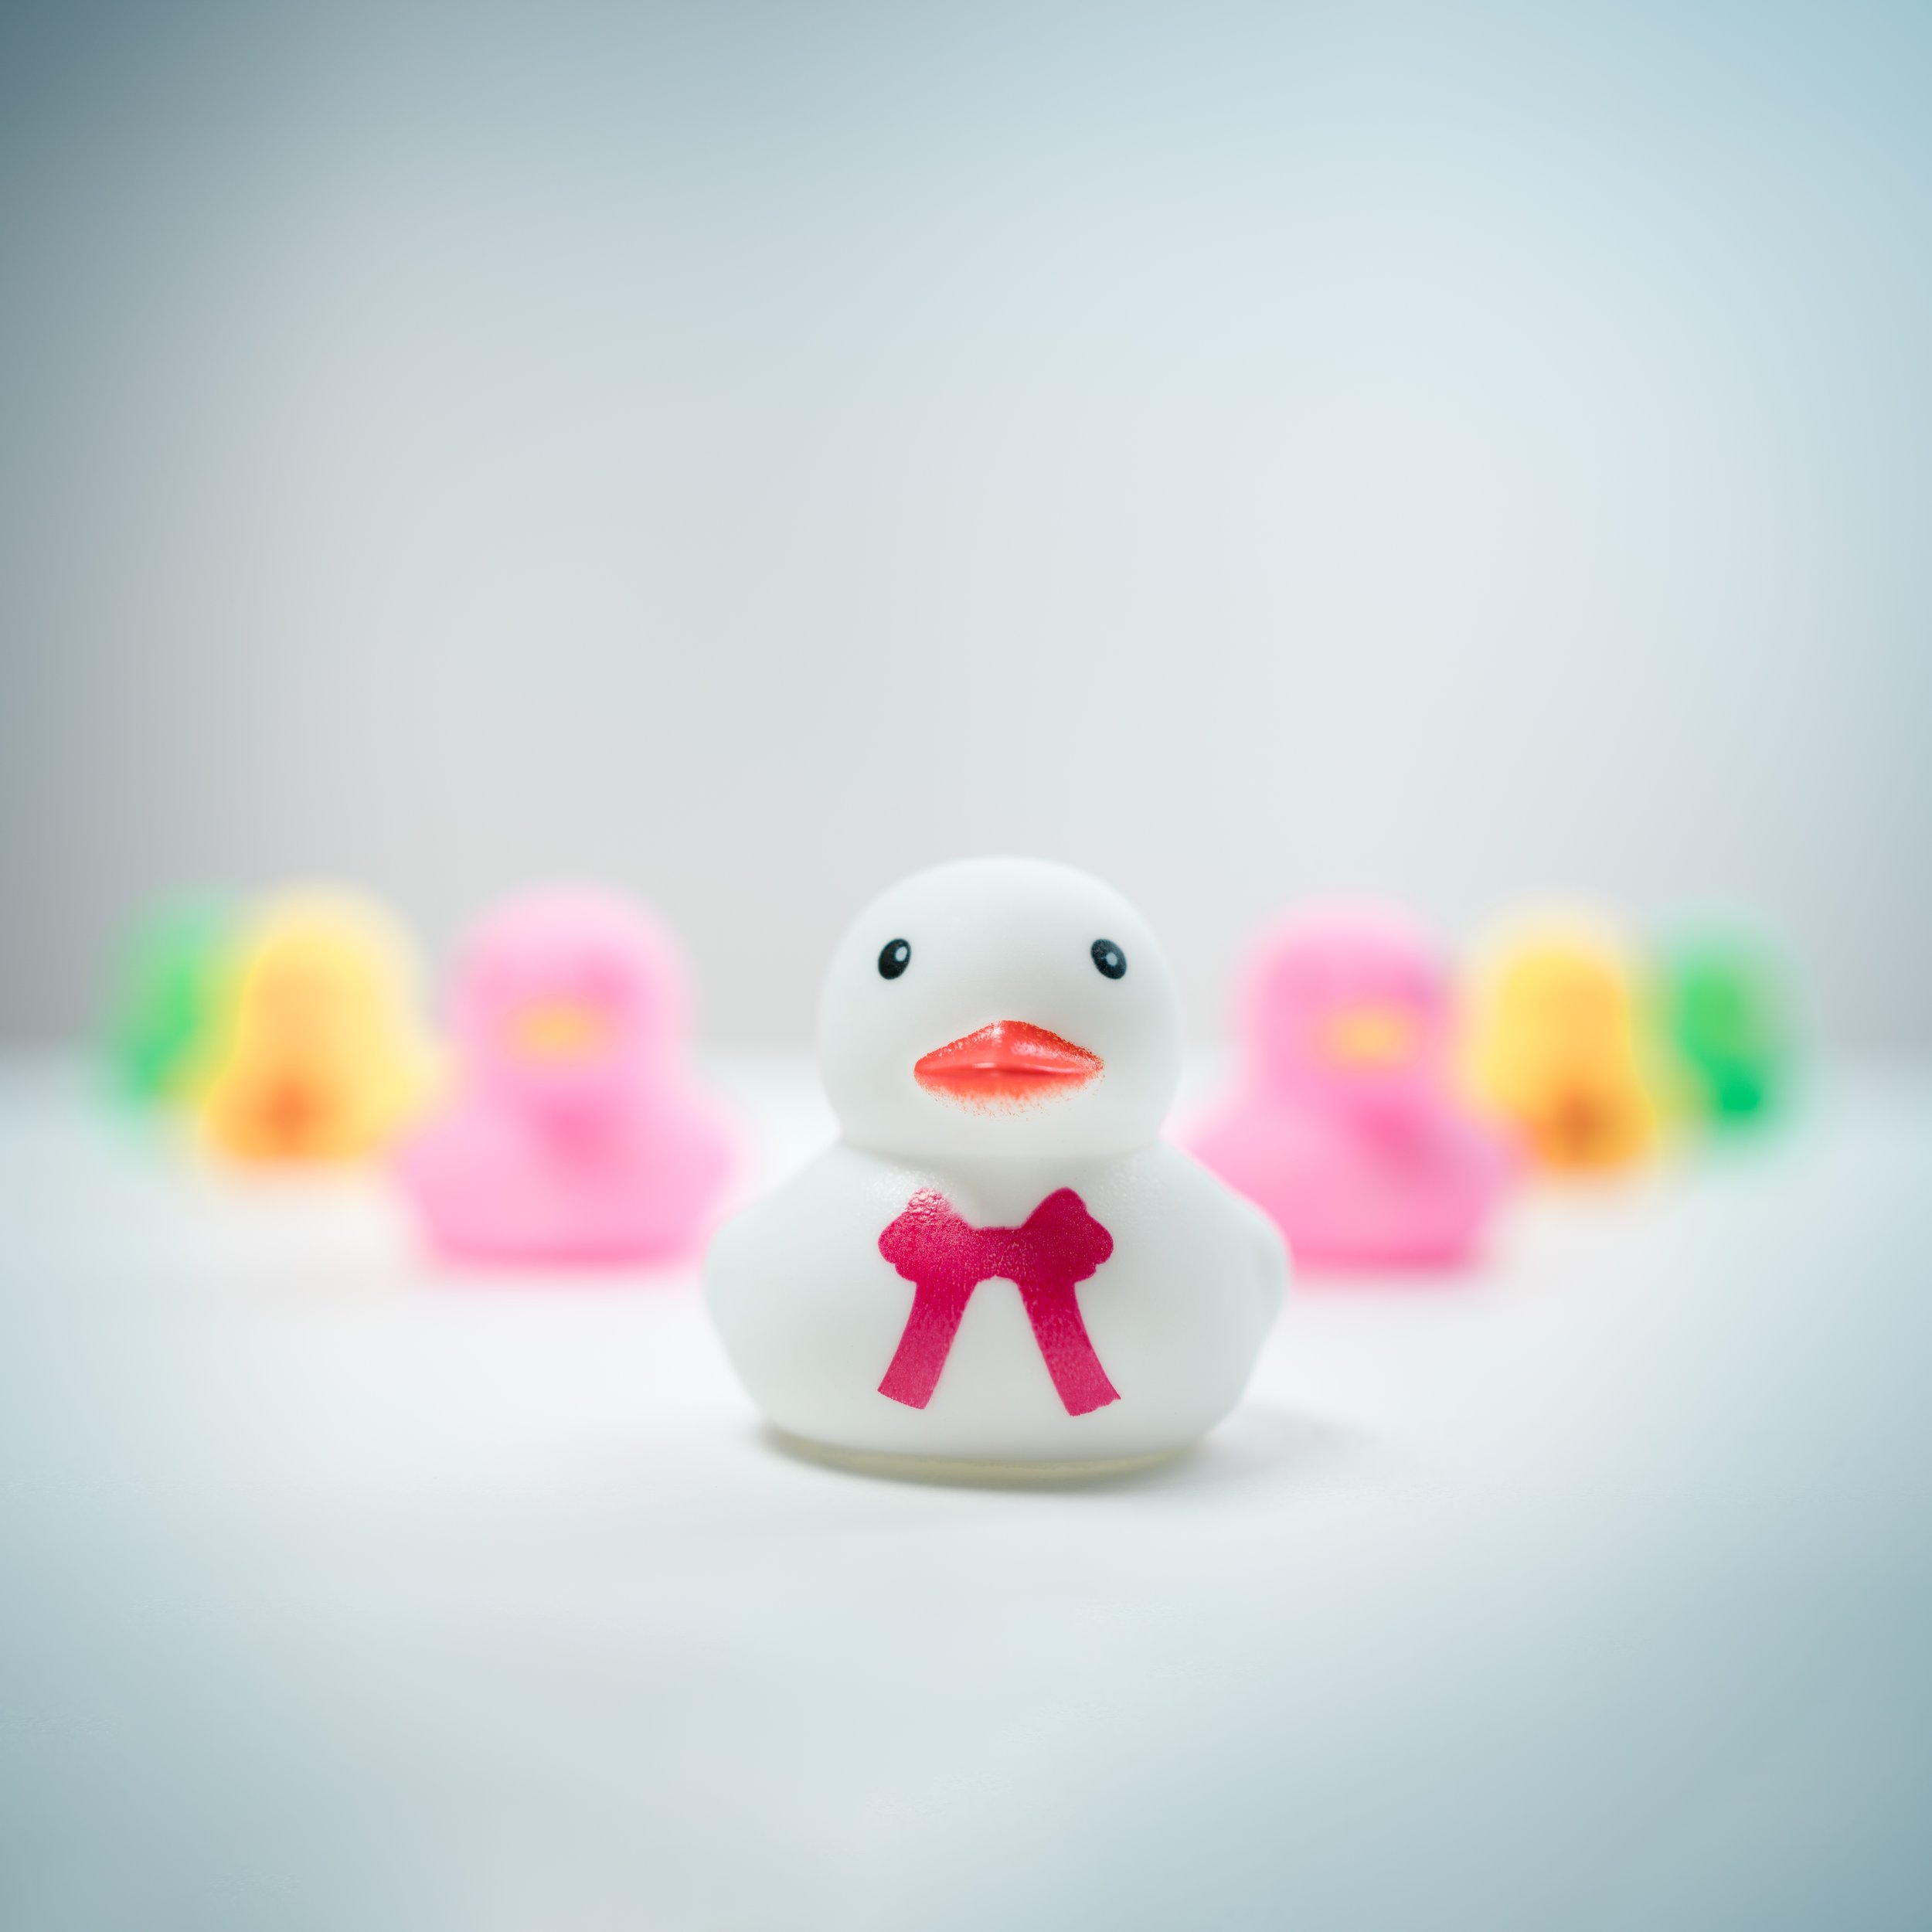 Rubber Ducks-1.jpg